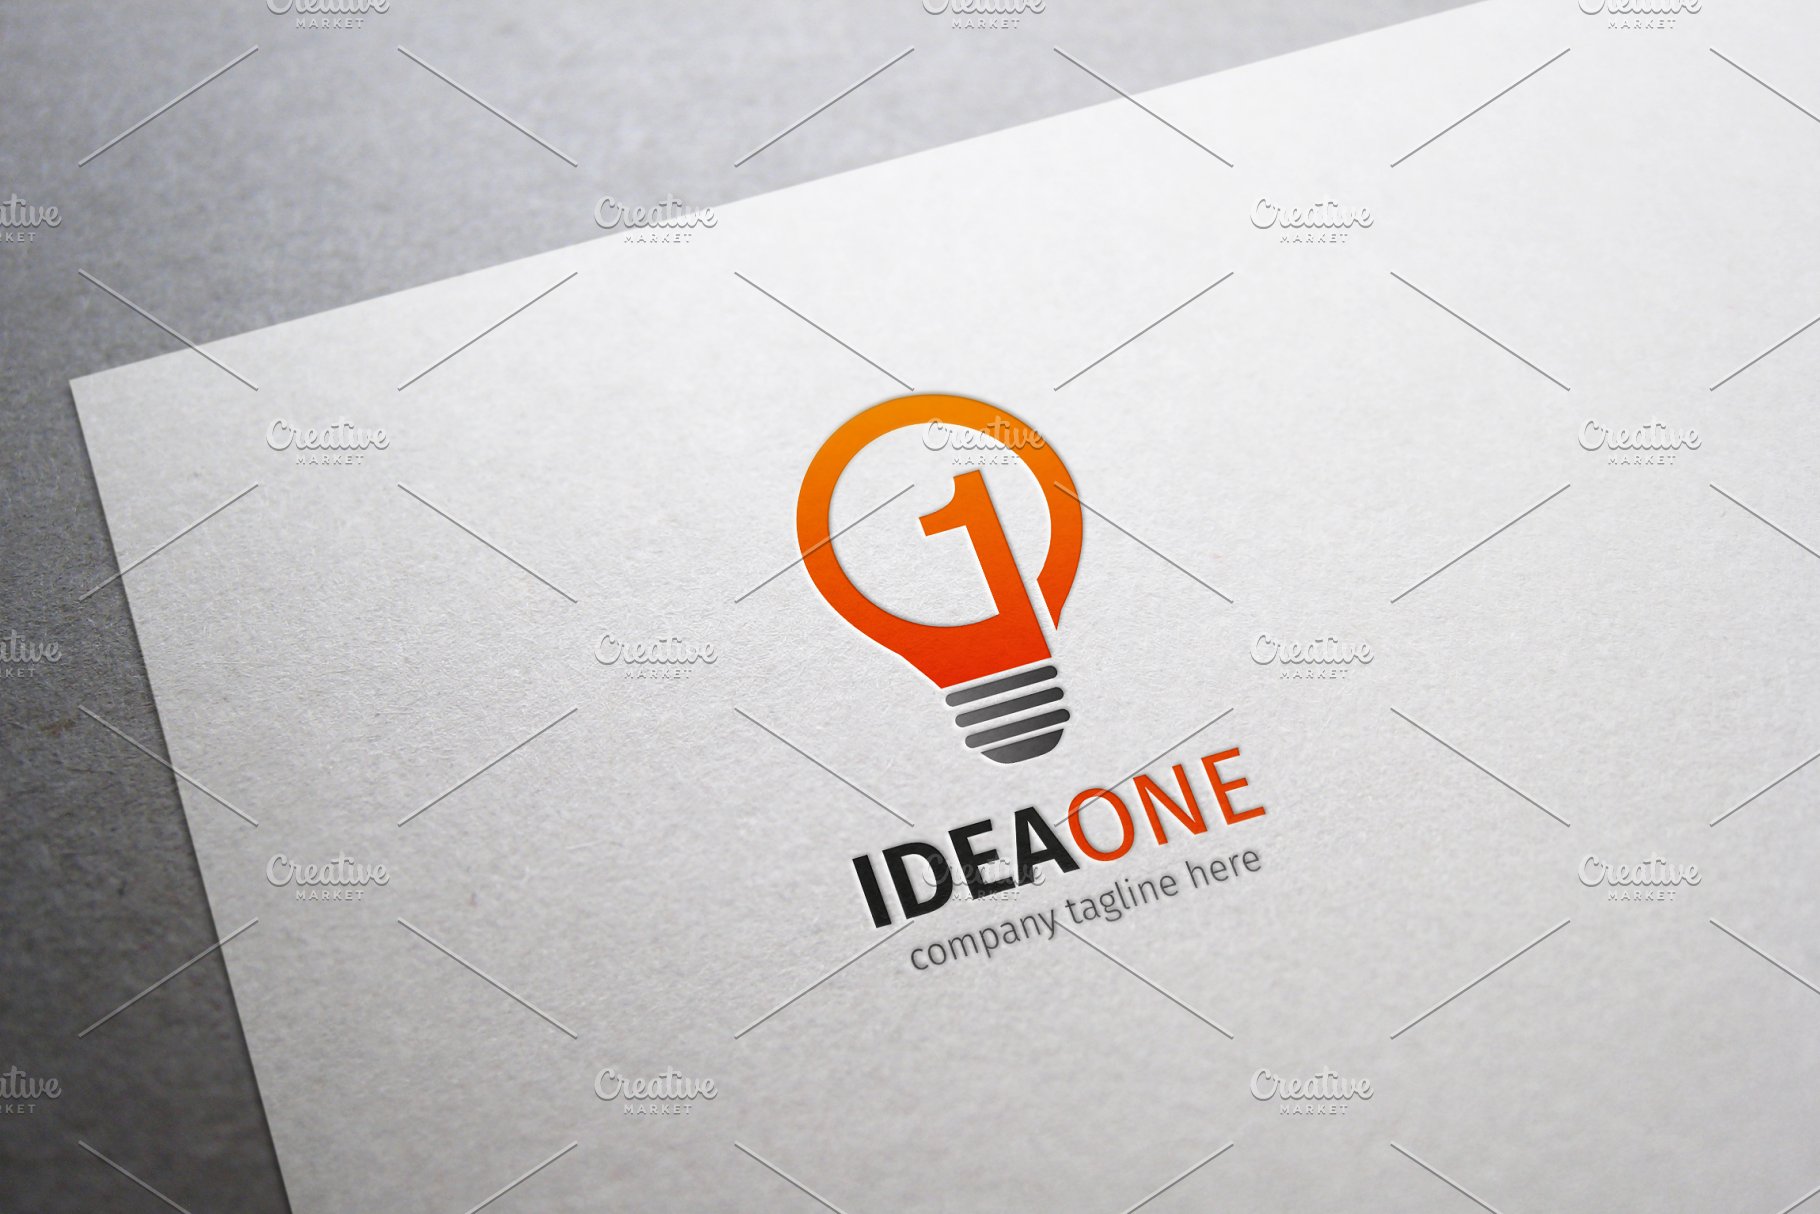 创意灵感主题灯泡形状Logo标志模板 Idea One Lo